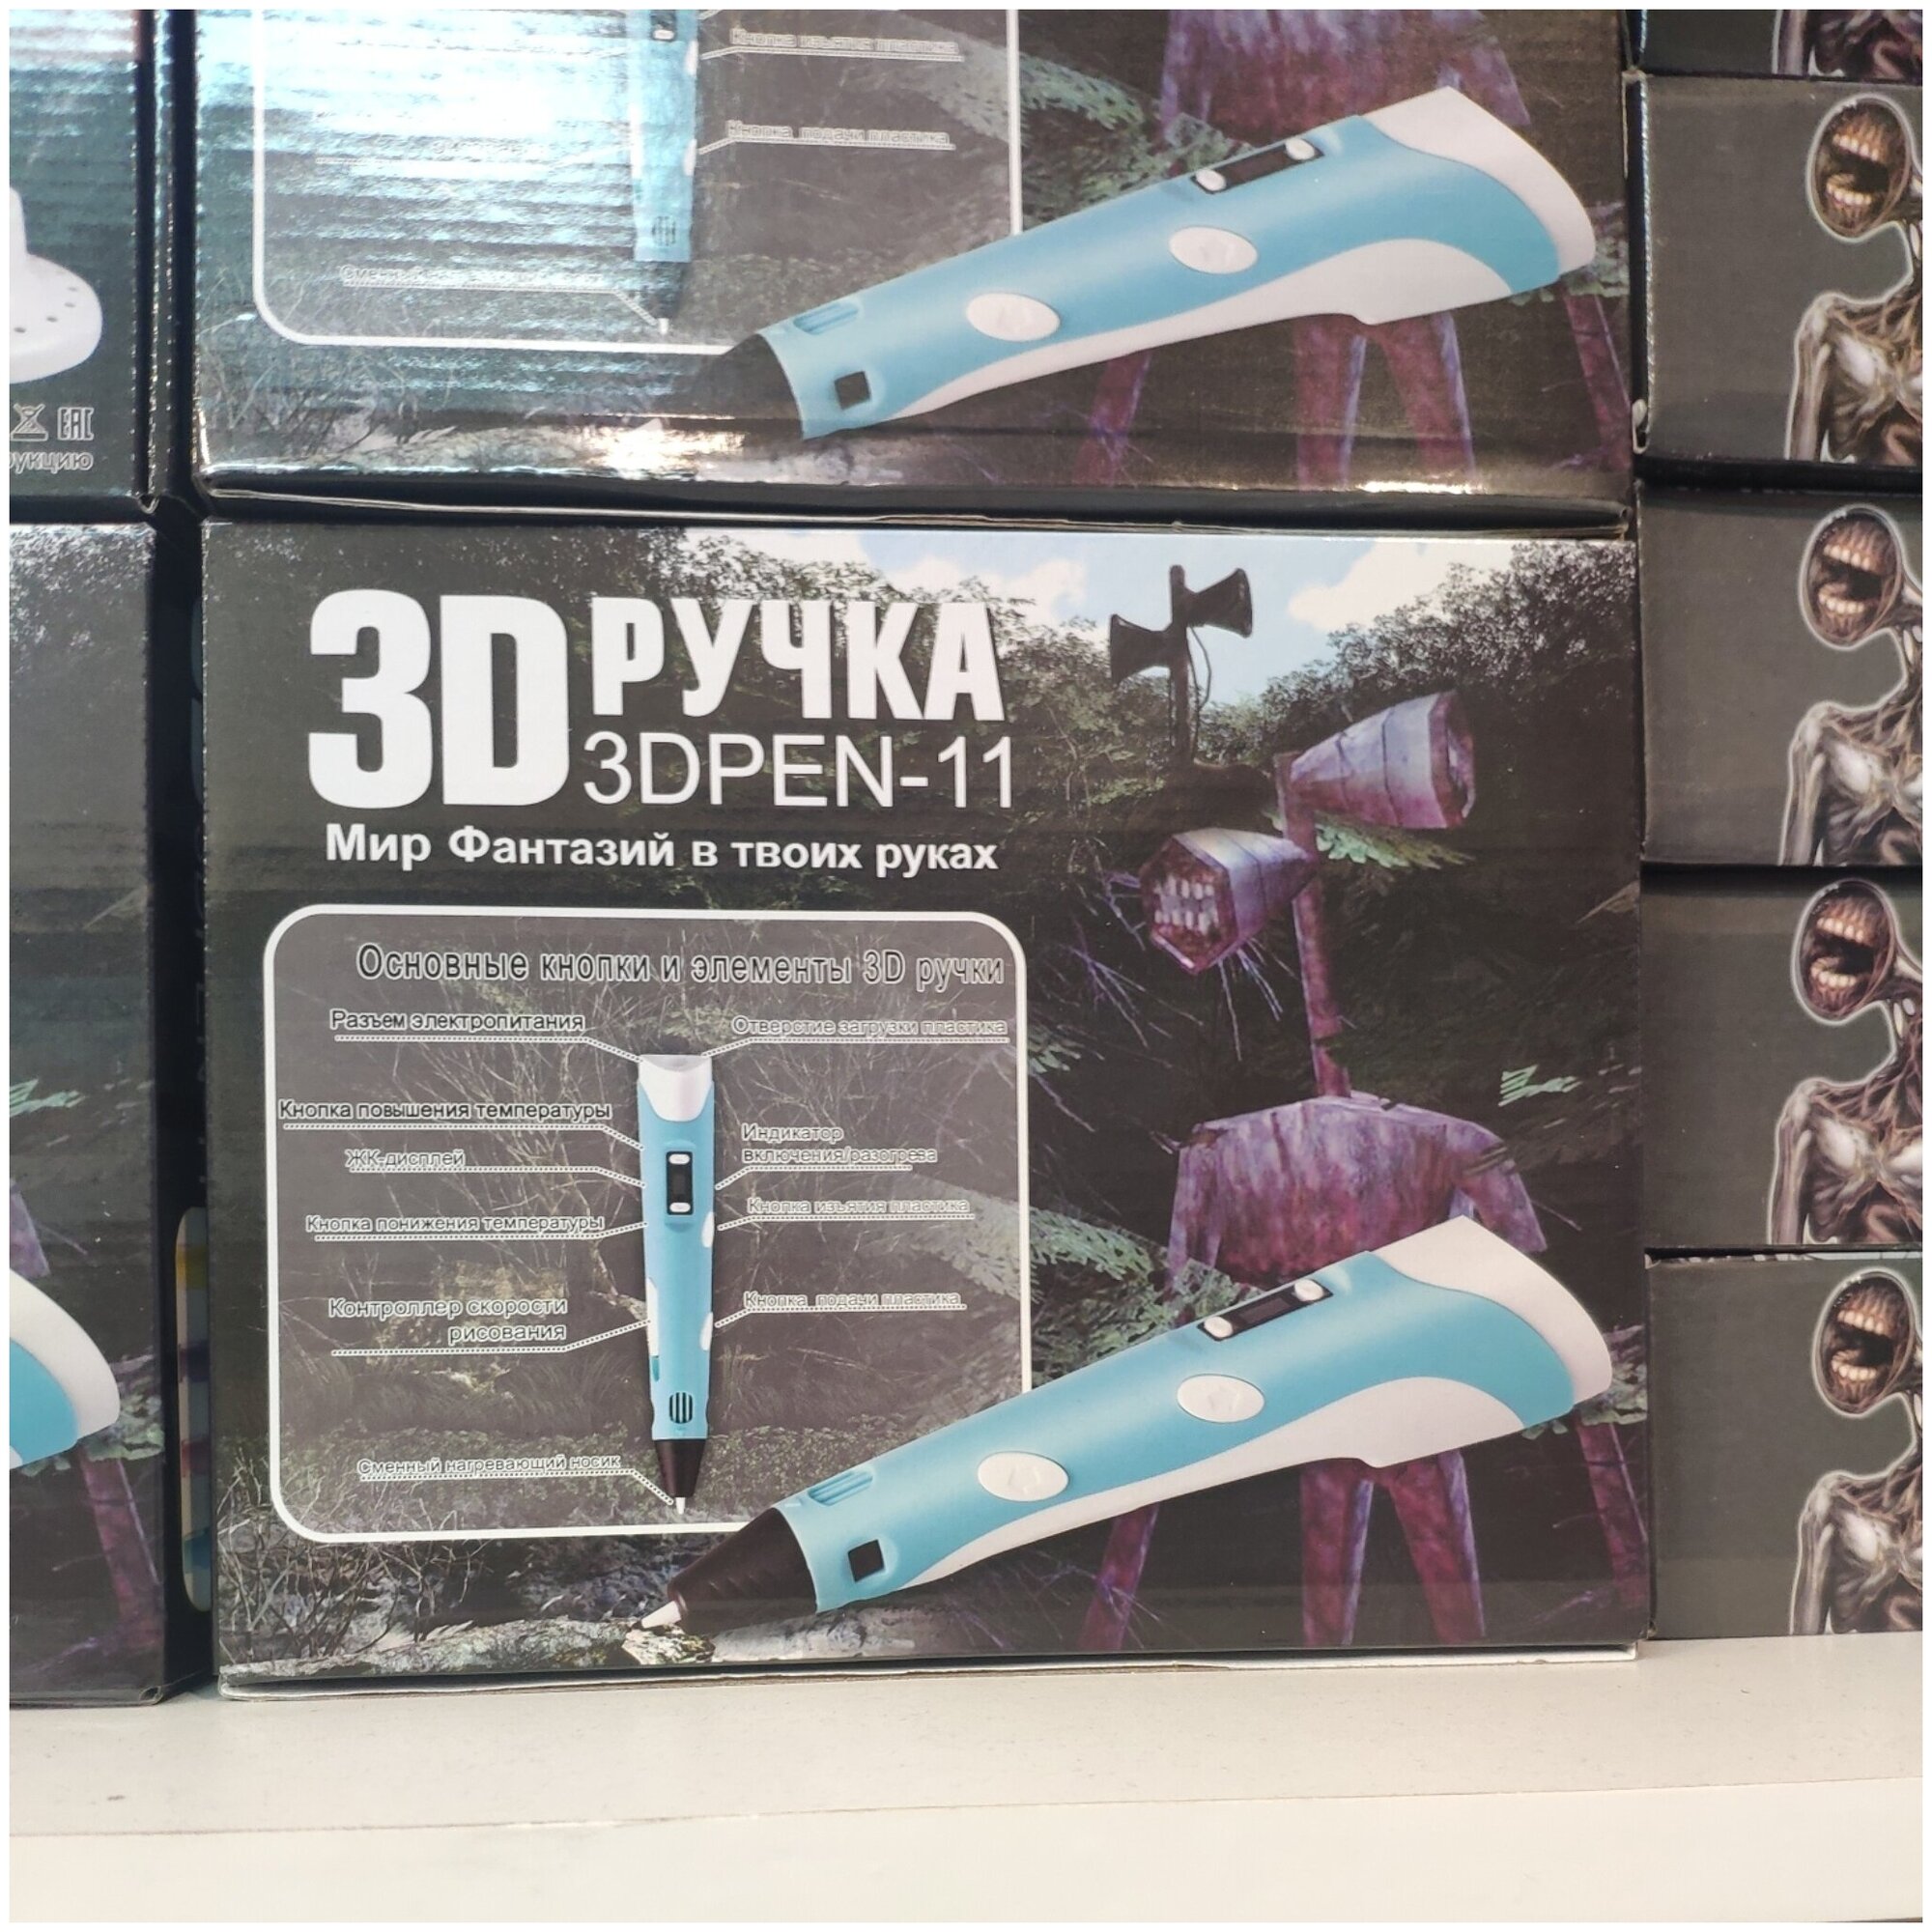 3Д ручка 3D PEN - 11 "Сиреноголовый - Sirenhead" Мир фантазий в твоих руках" с трафаретами